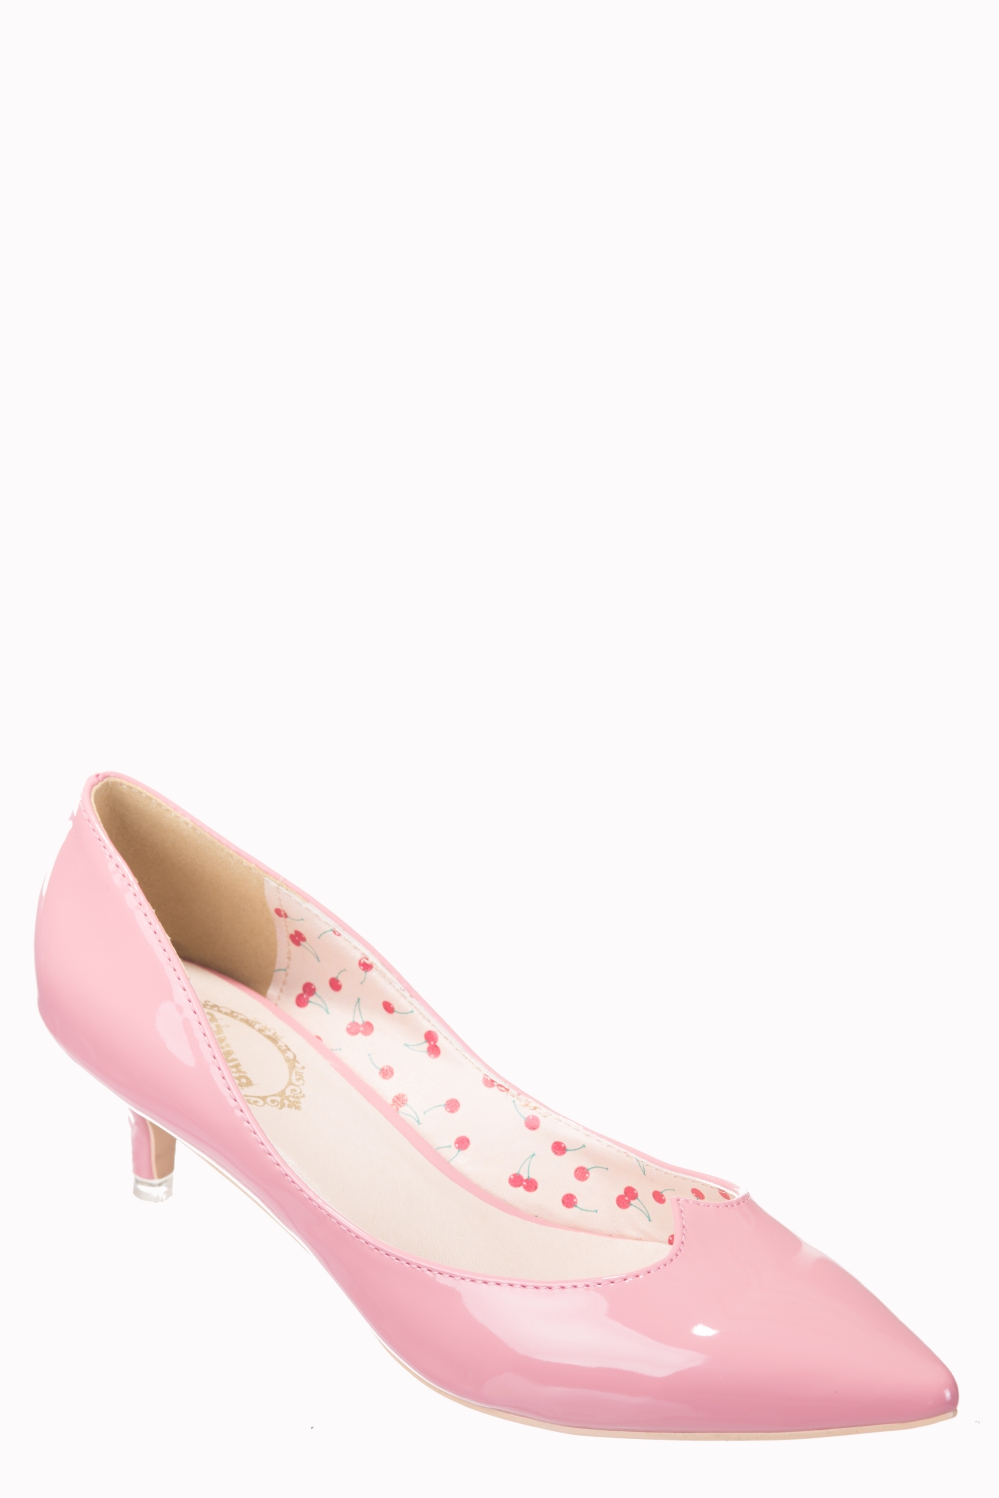 Banned 1940s Pink Kitten Heels 